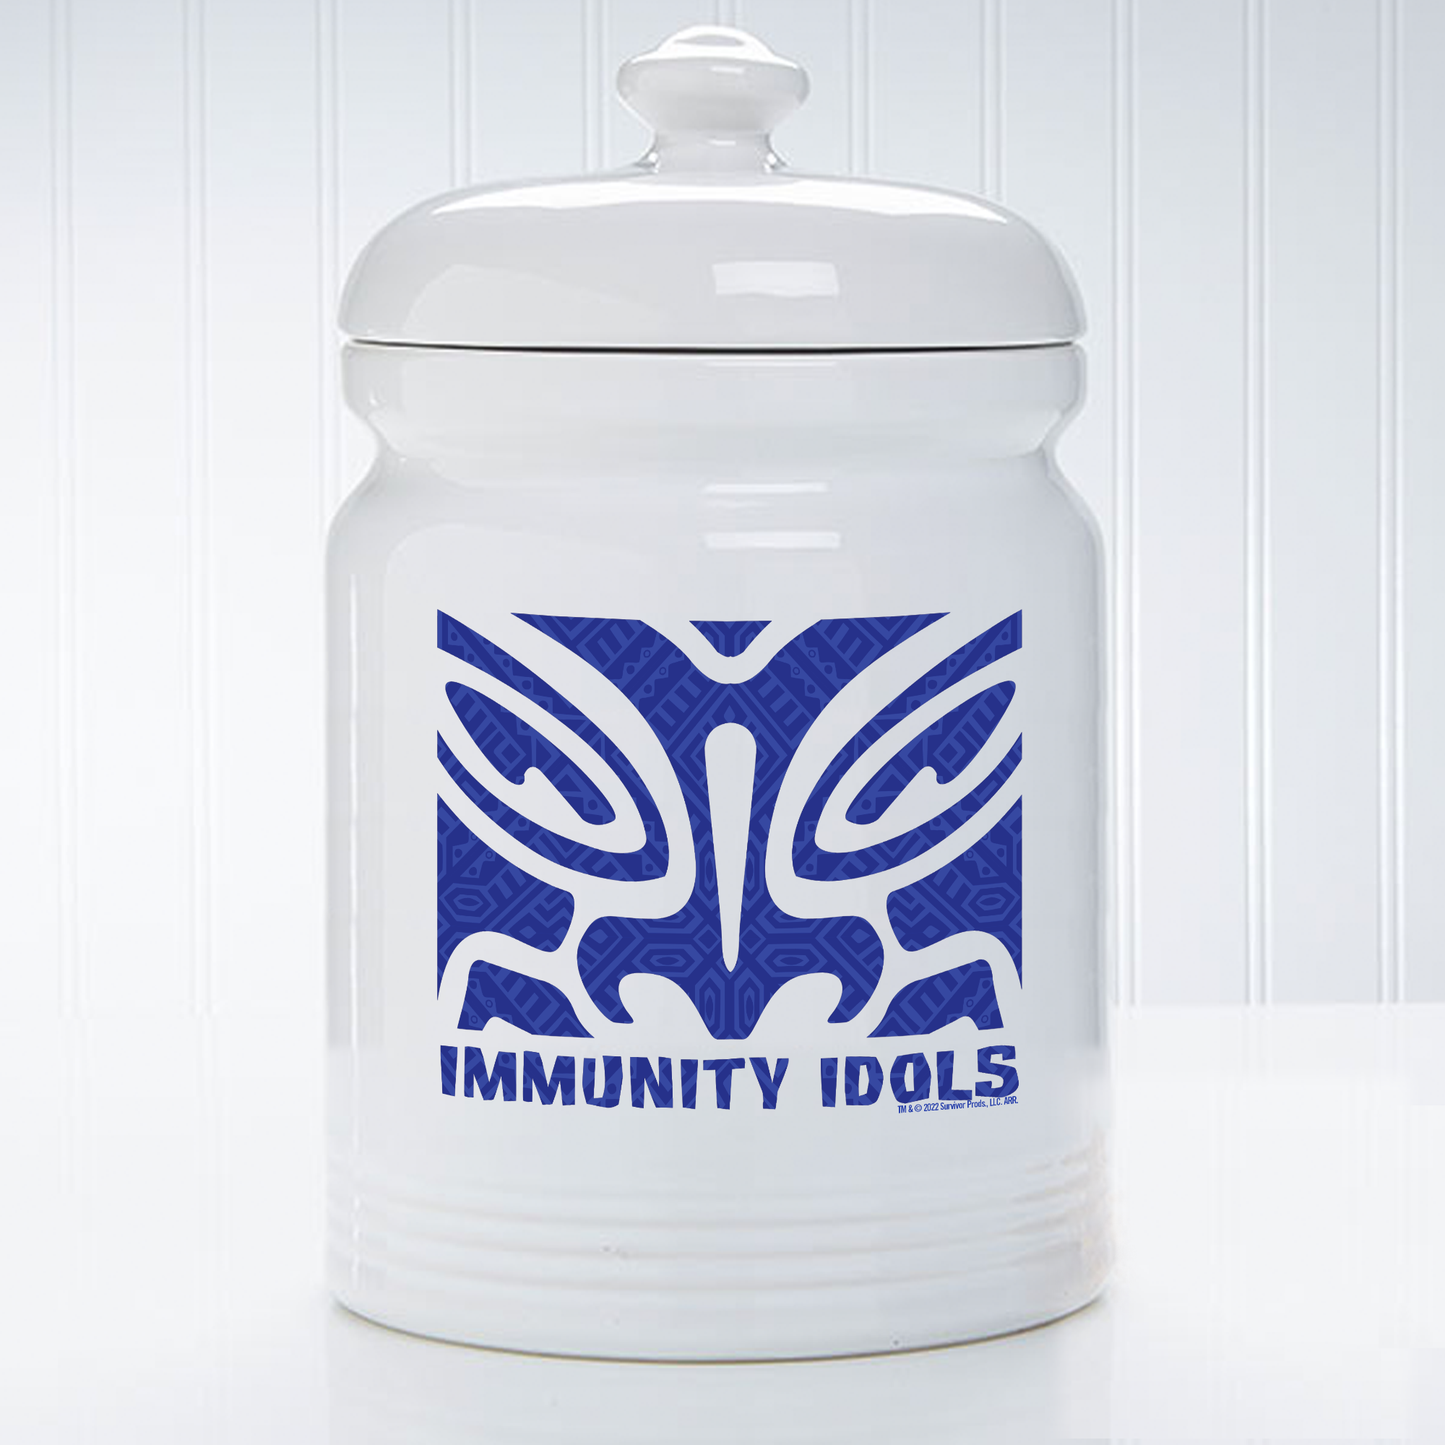 Survivor Immunity Idols Treat Jar